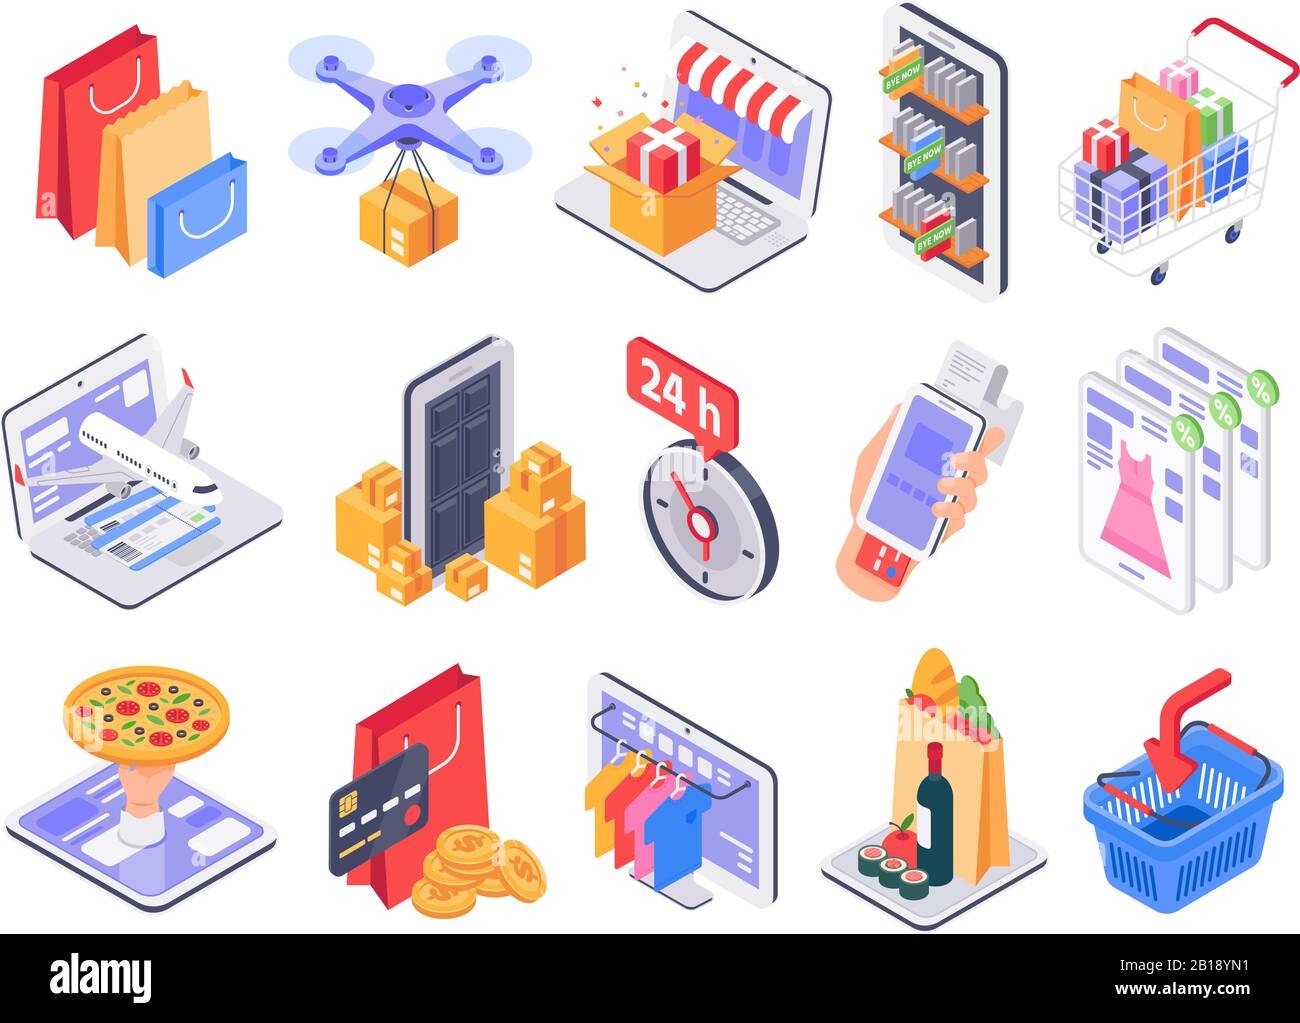 Isometrischer Einkauf. Online-Shop, Marktlieferung und Verkauf von Geschäften. 3D-Vektorgrafiksatz für Internetkauf und Lebensmittelprodukte Stock Vektor